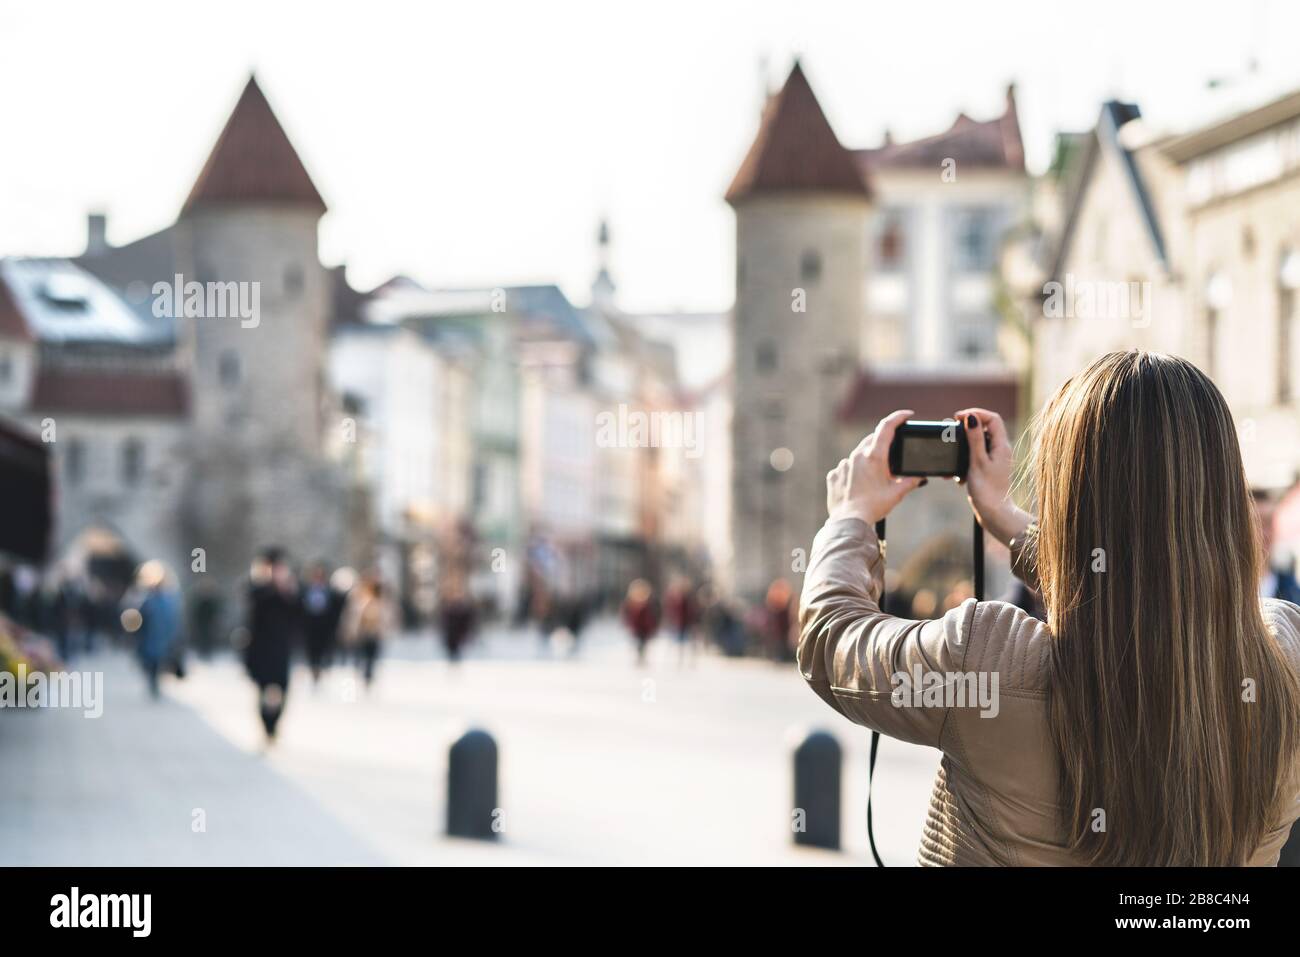 Tourisme à Tallinn prendre la photo de la porte Viru. Femme en vacances en prenant photo du monument en Estonie. Les gens marchant dans la rue populaire. Banque D'Images